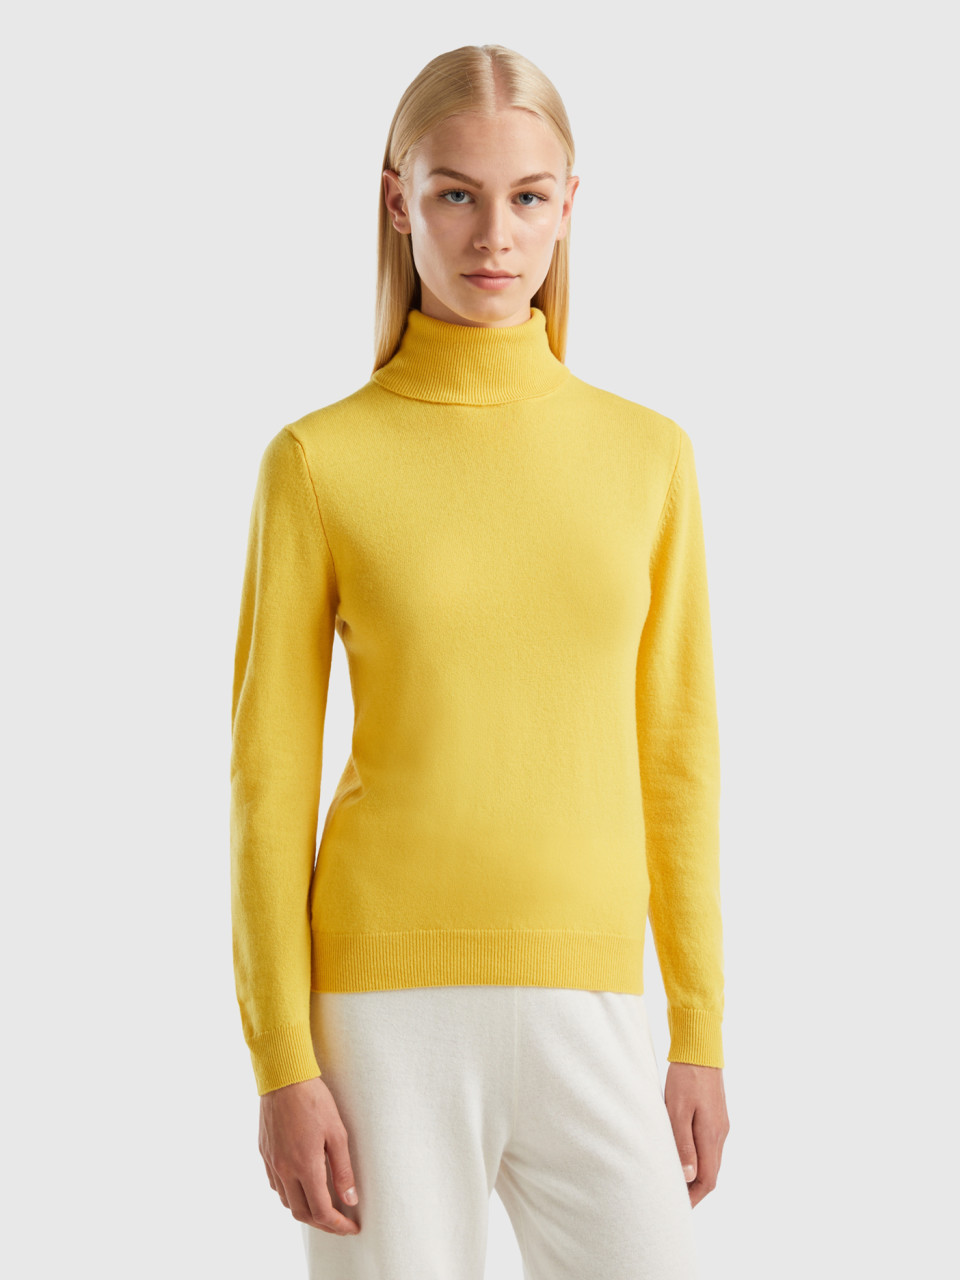 Benetton, Yellow Turtleneck In Pure Merino Wool, Yellow, Women